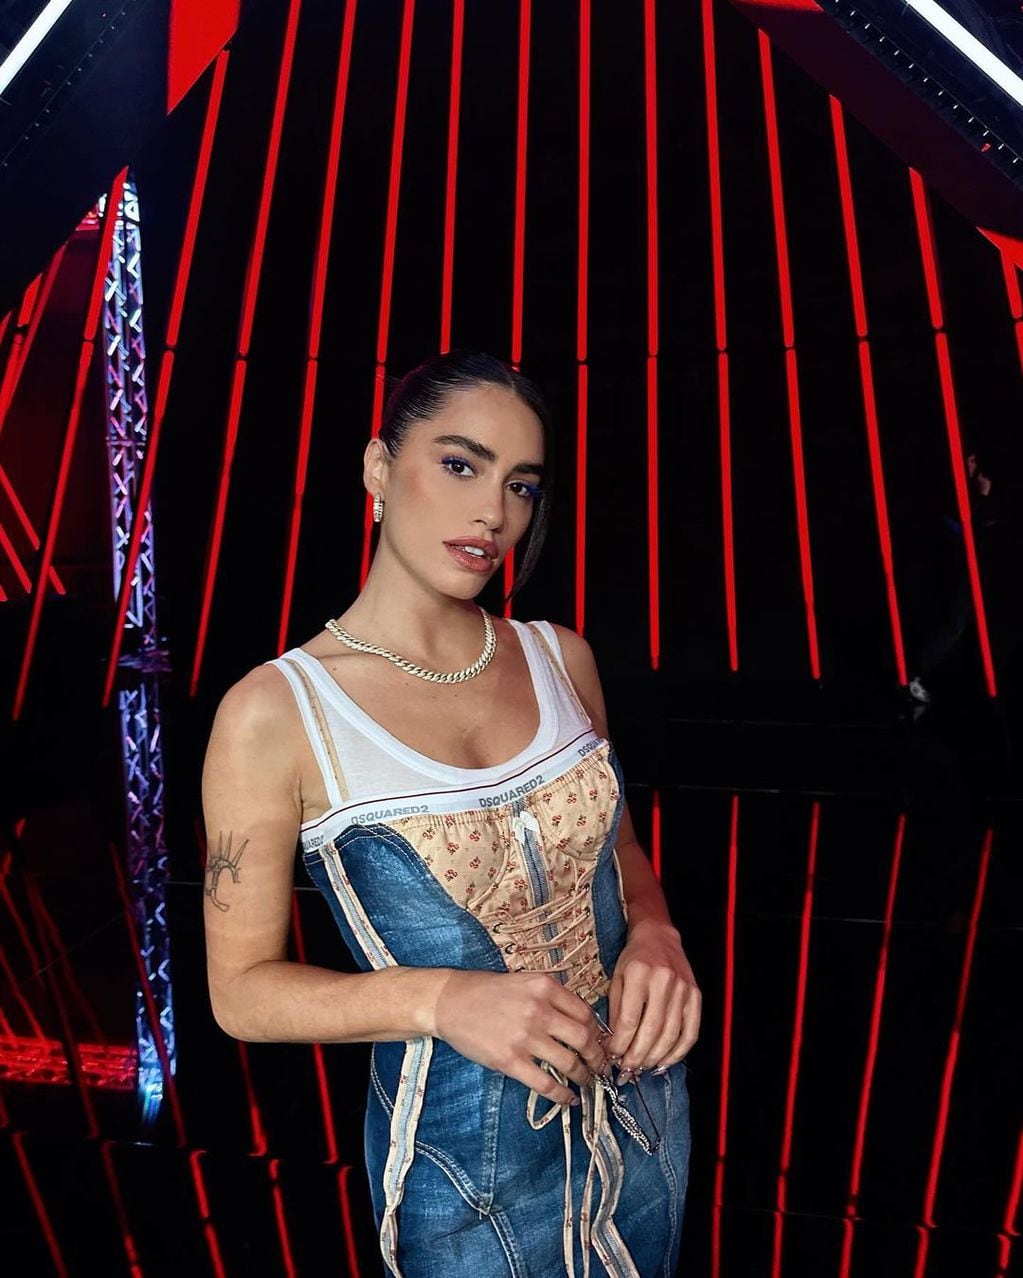 Corset y denim: Lali brilló con un look noventero en Factor X de España